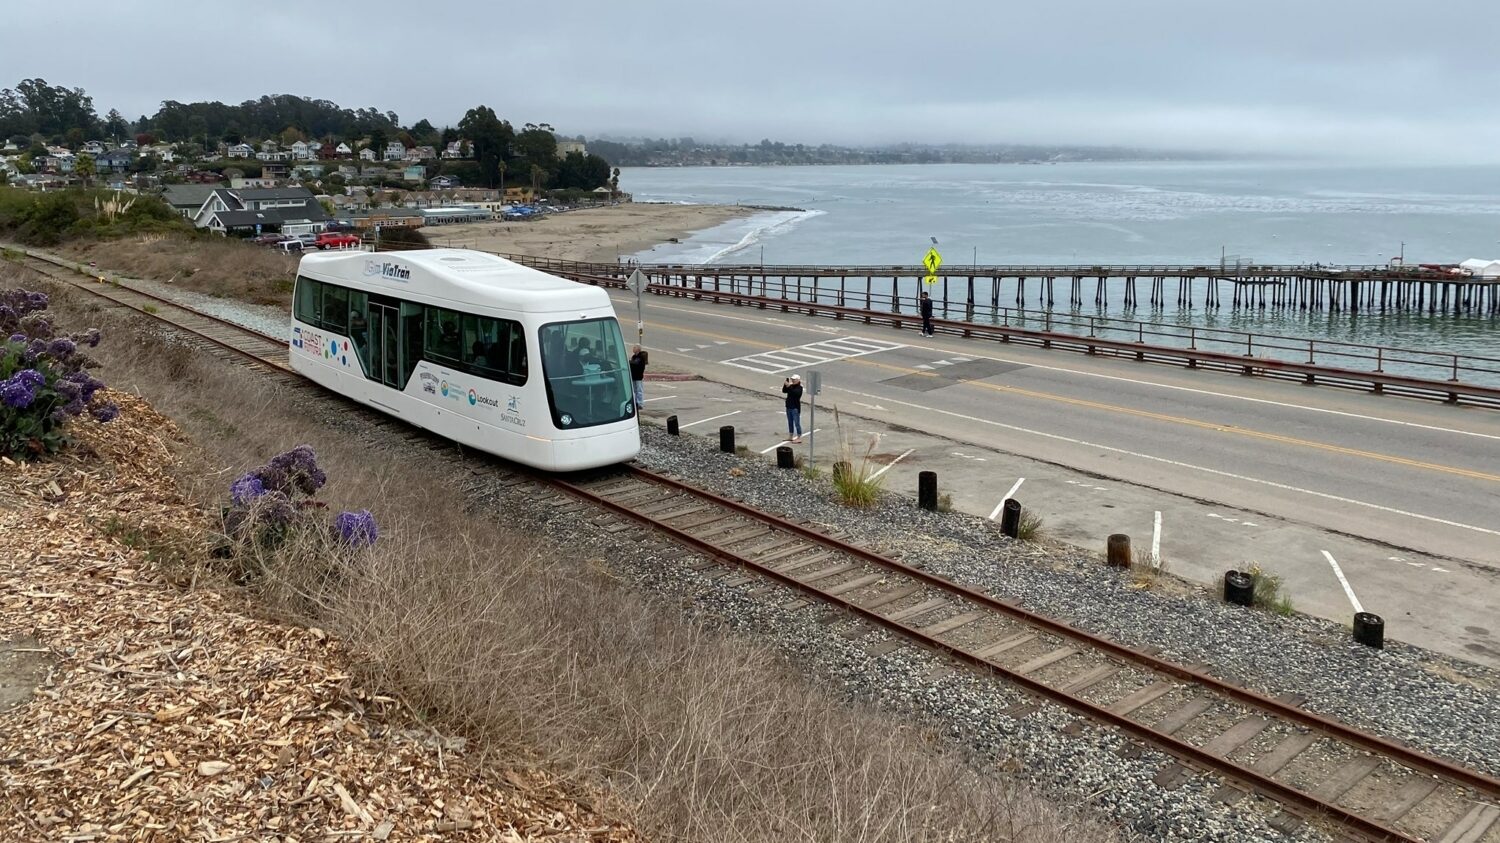 Tramvaj s bateriovým pohonem od výrobce TIG/m na bývalé železniční trati v Santa Cruz. (foto: Coast Futura)